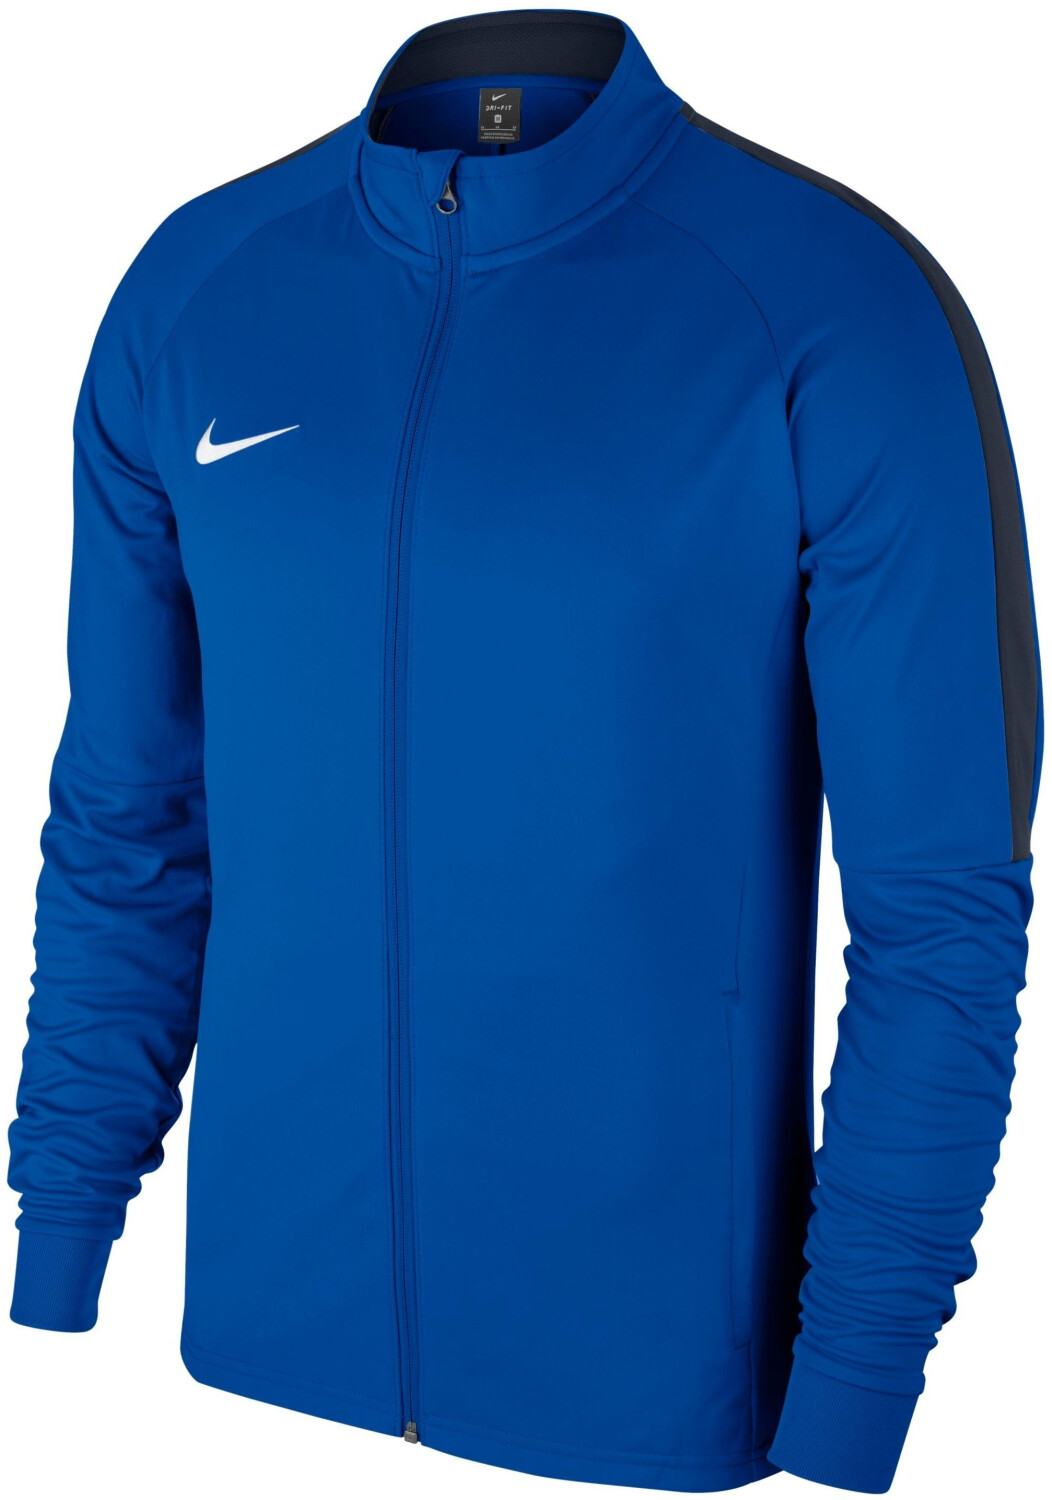 Nike Dry Academy 18 Training Jacket royal blue/obsidian/white